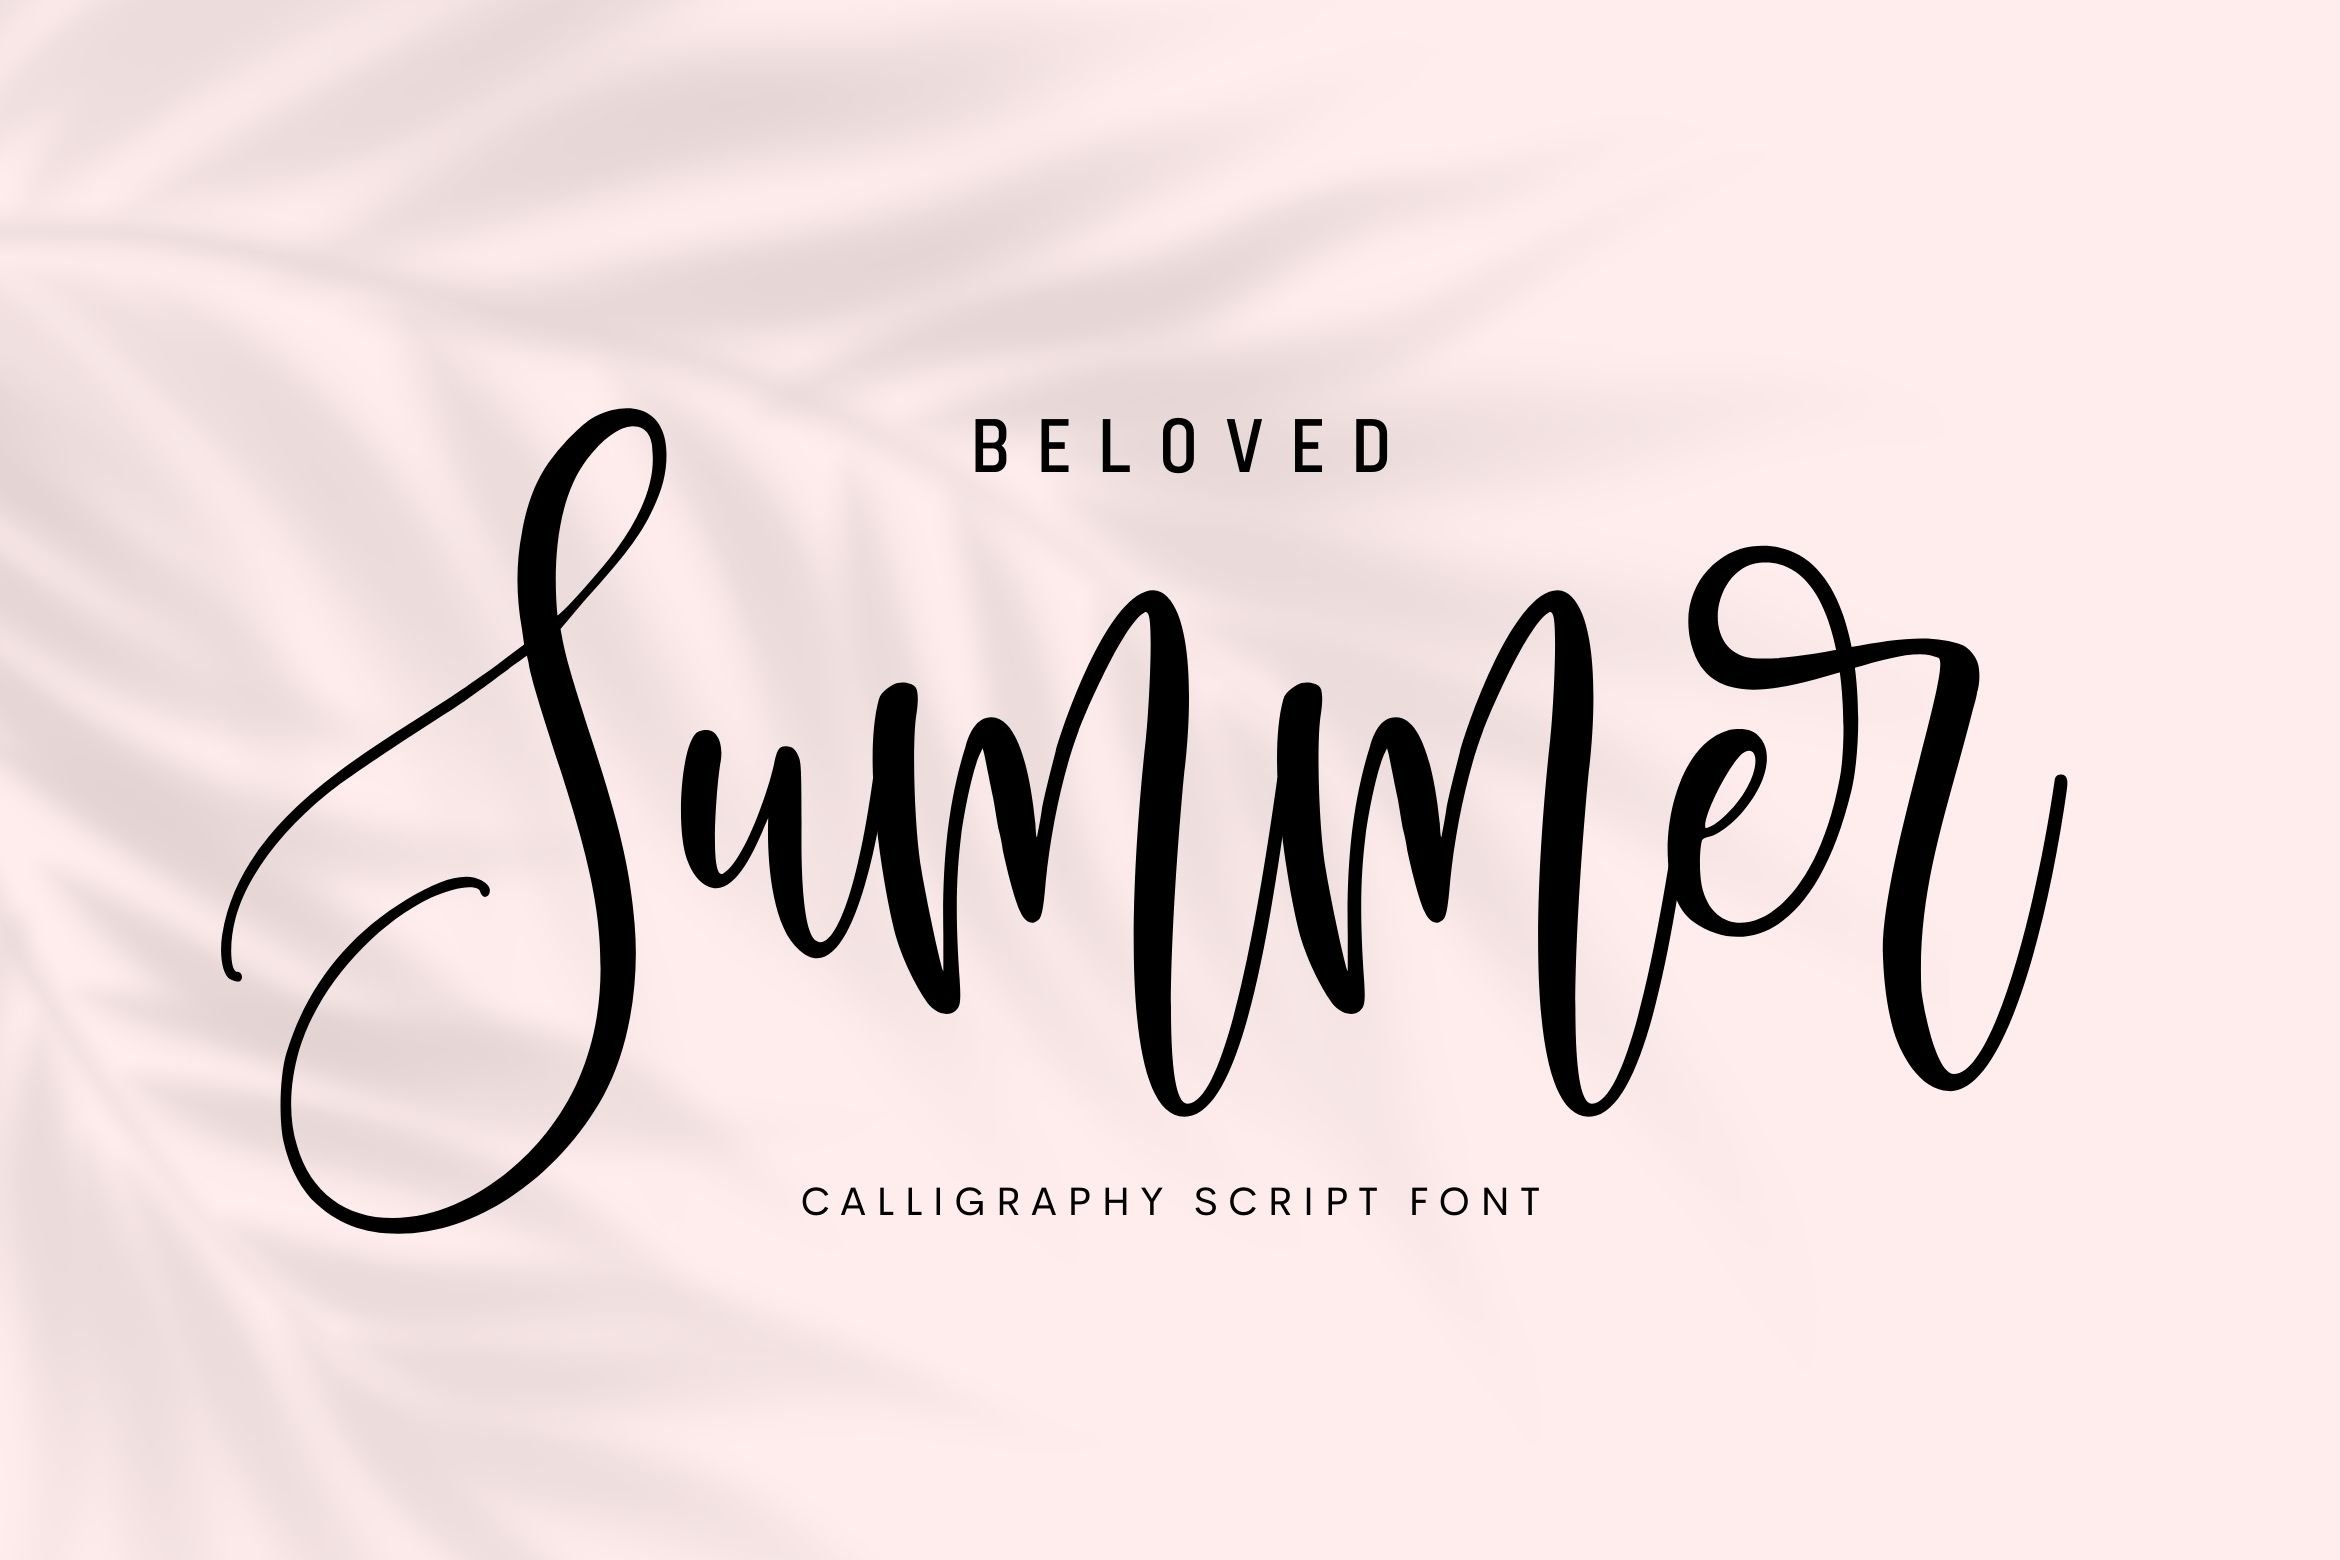 Beloved Summer Font cover image.